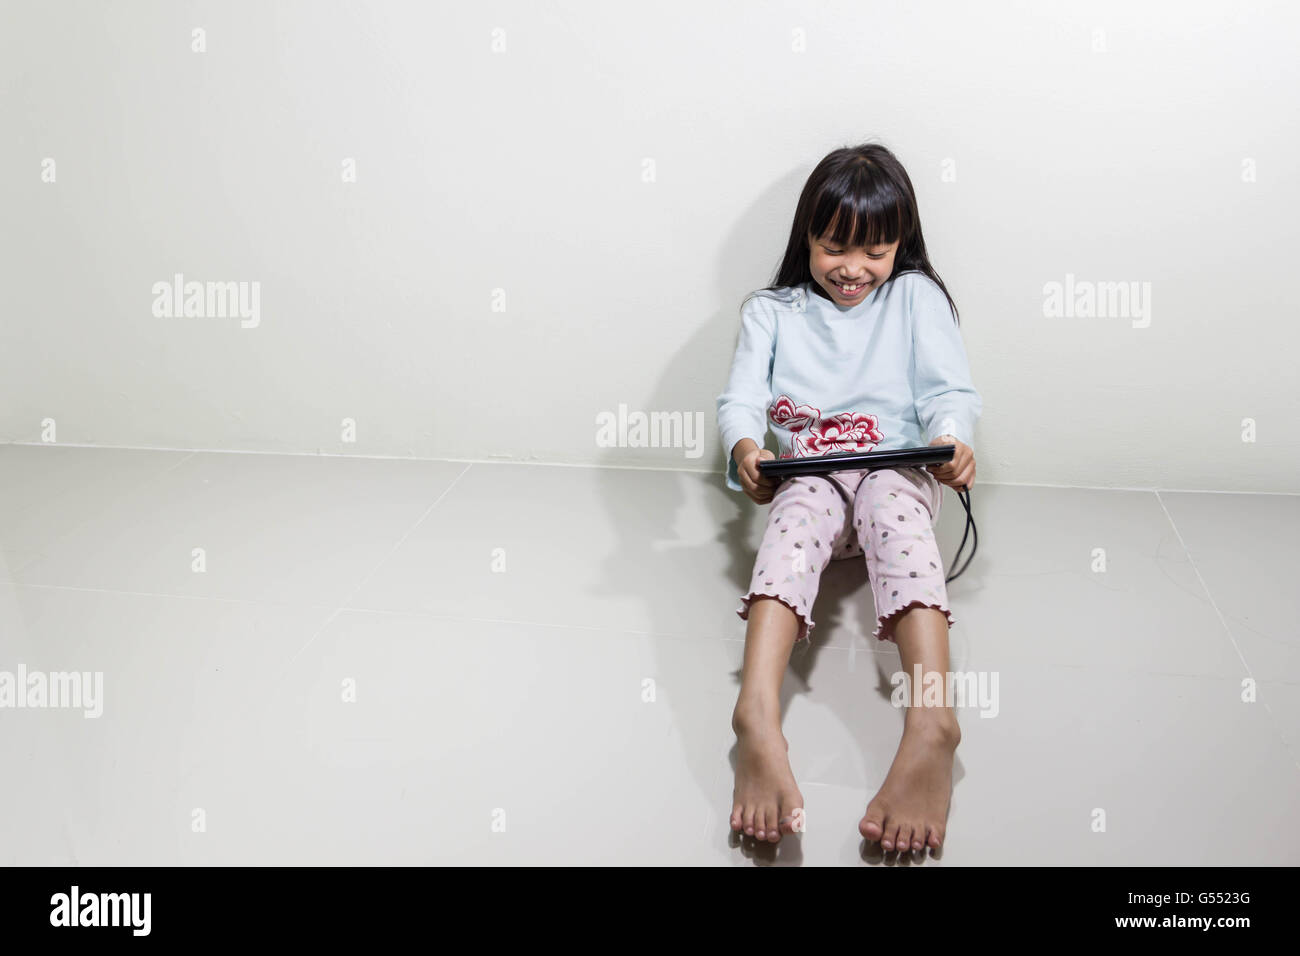 Kinder mit Tablet-PC sitzen auf dem Boden - Technologie und Kinder Konzept Stockfoto